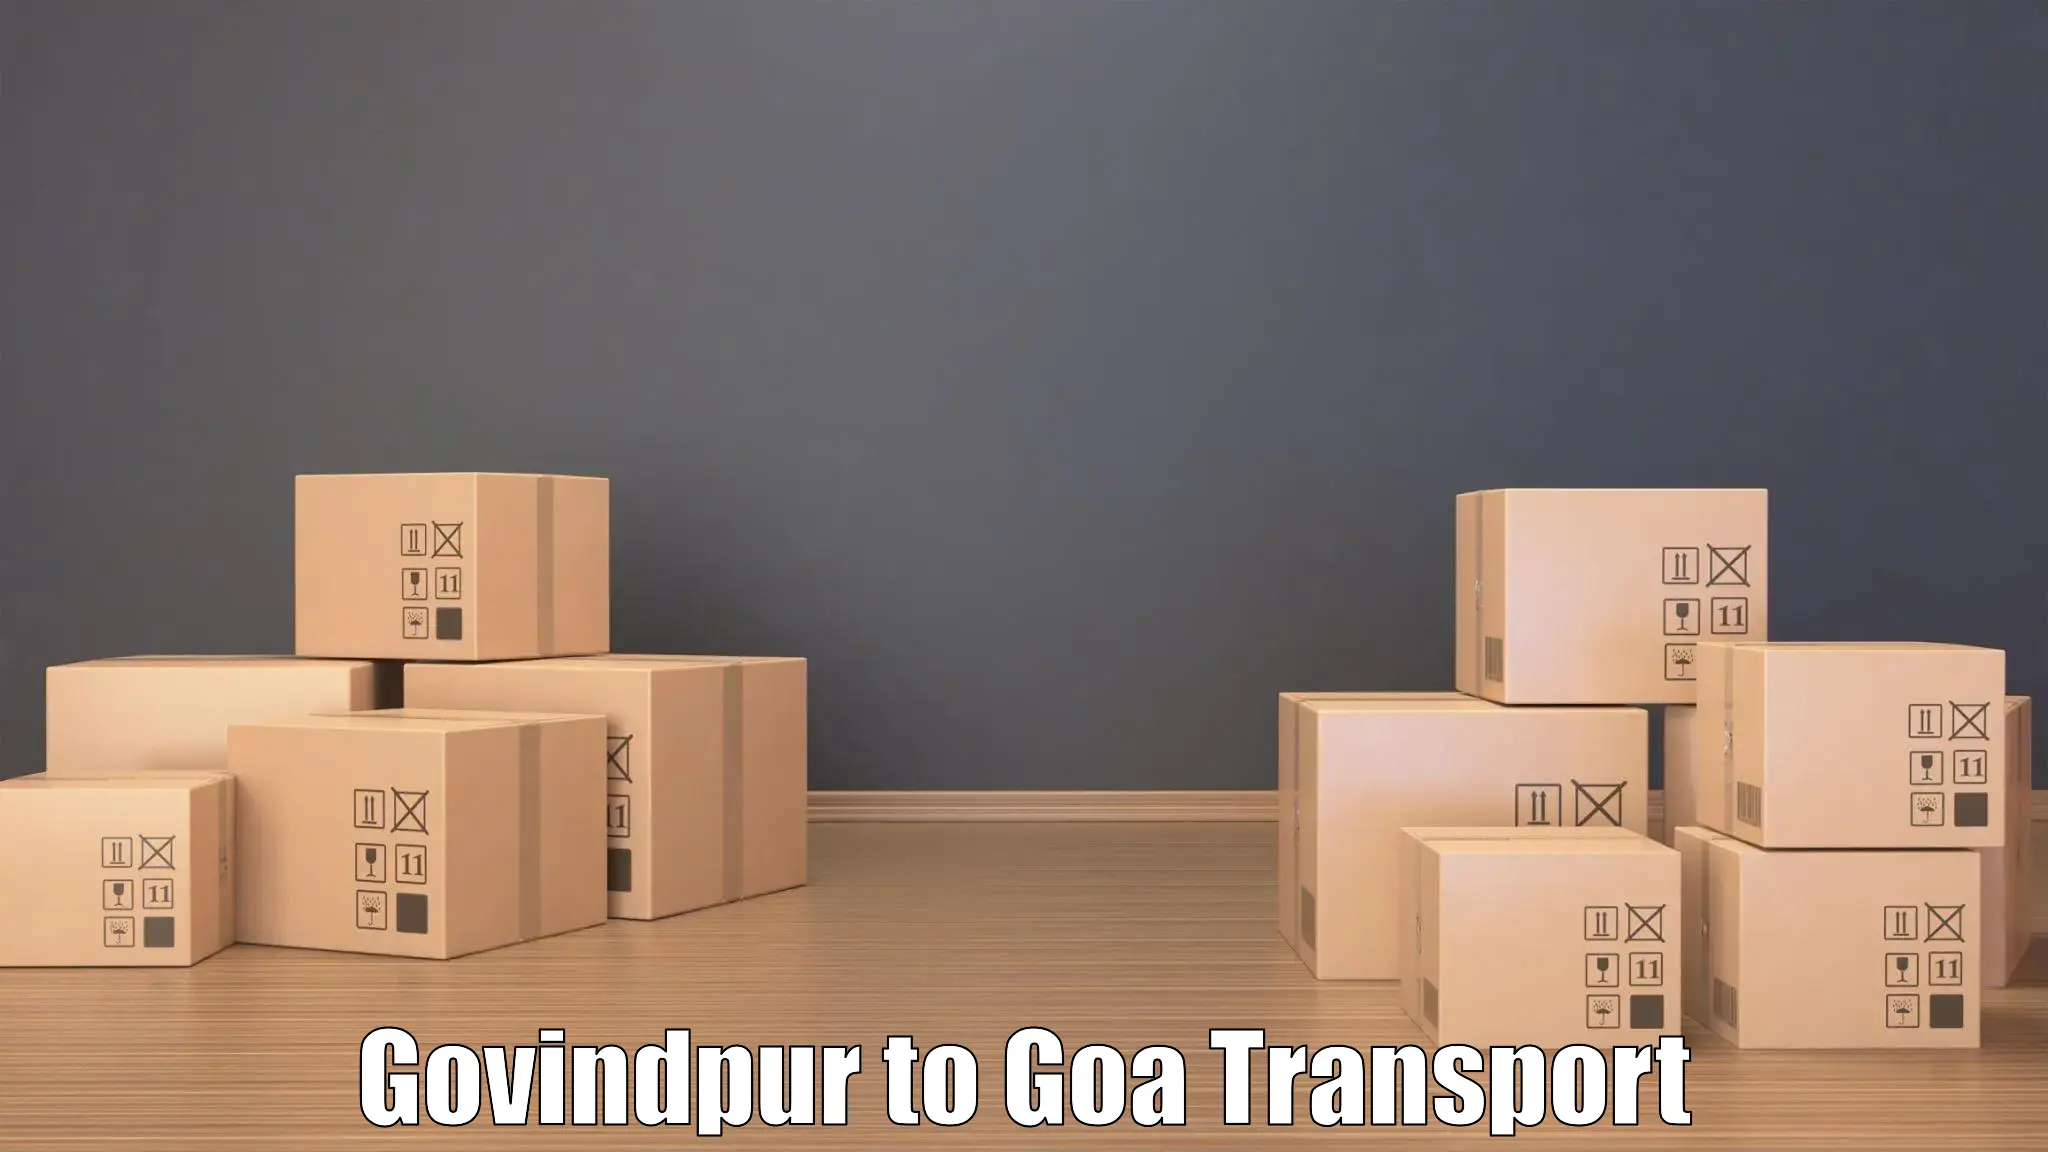 Road transport online services Govindpur to NIT Goa